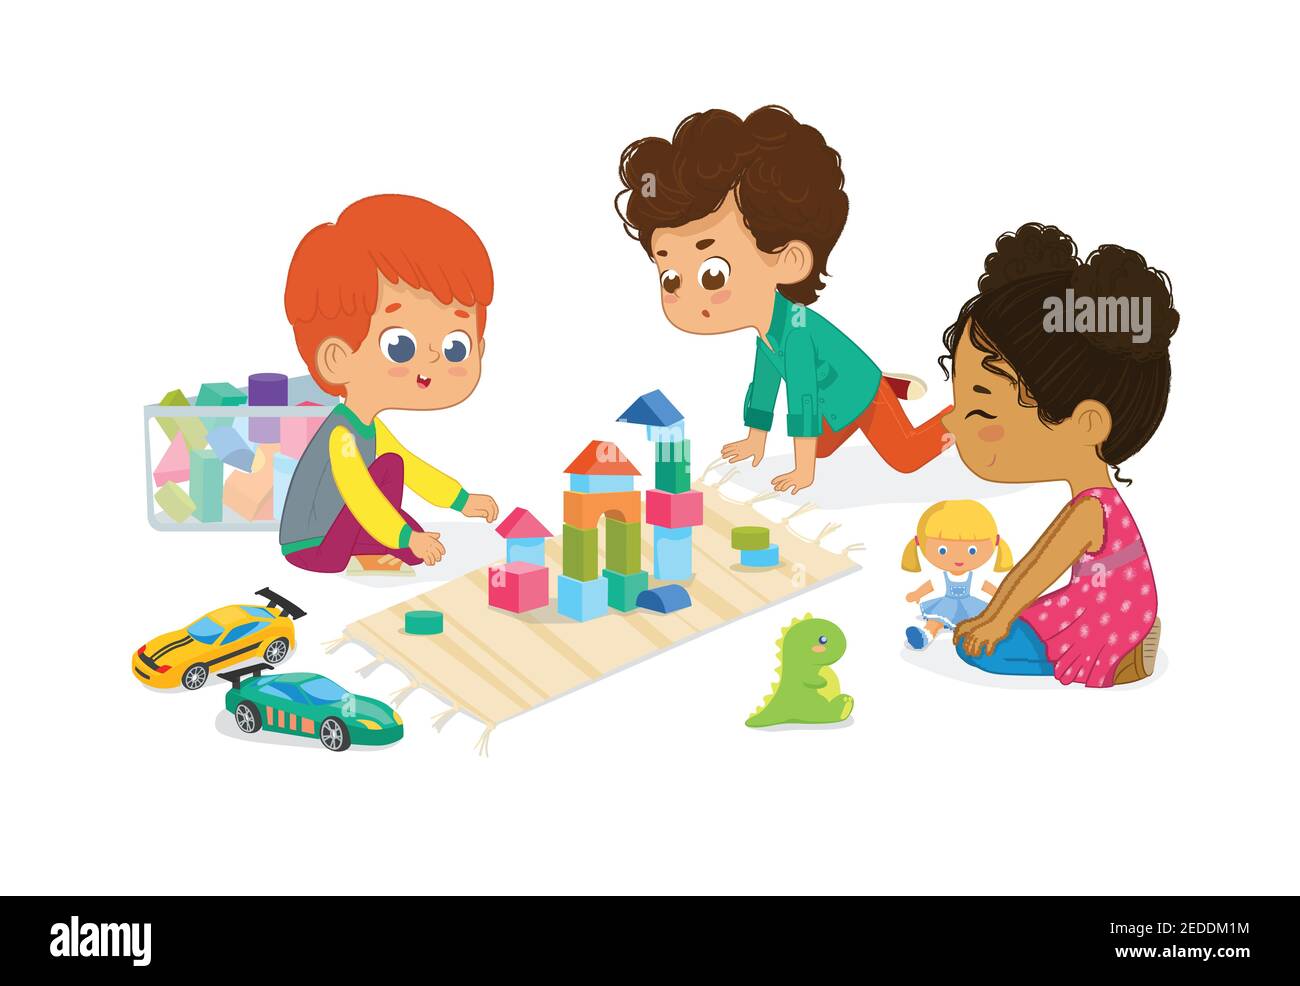 Kinder sitzen im Kreis und spielen mit Spielzeug im Kindergarten Klassenzimmer, spielen mit Holzspielzeugblöcken, Autos, Puppe und lachen. Lernen durch Stock Vektor